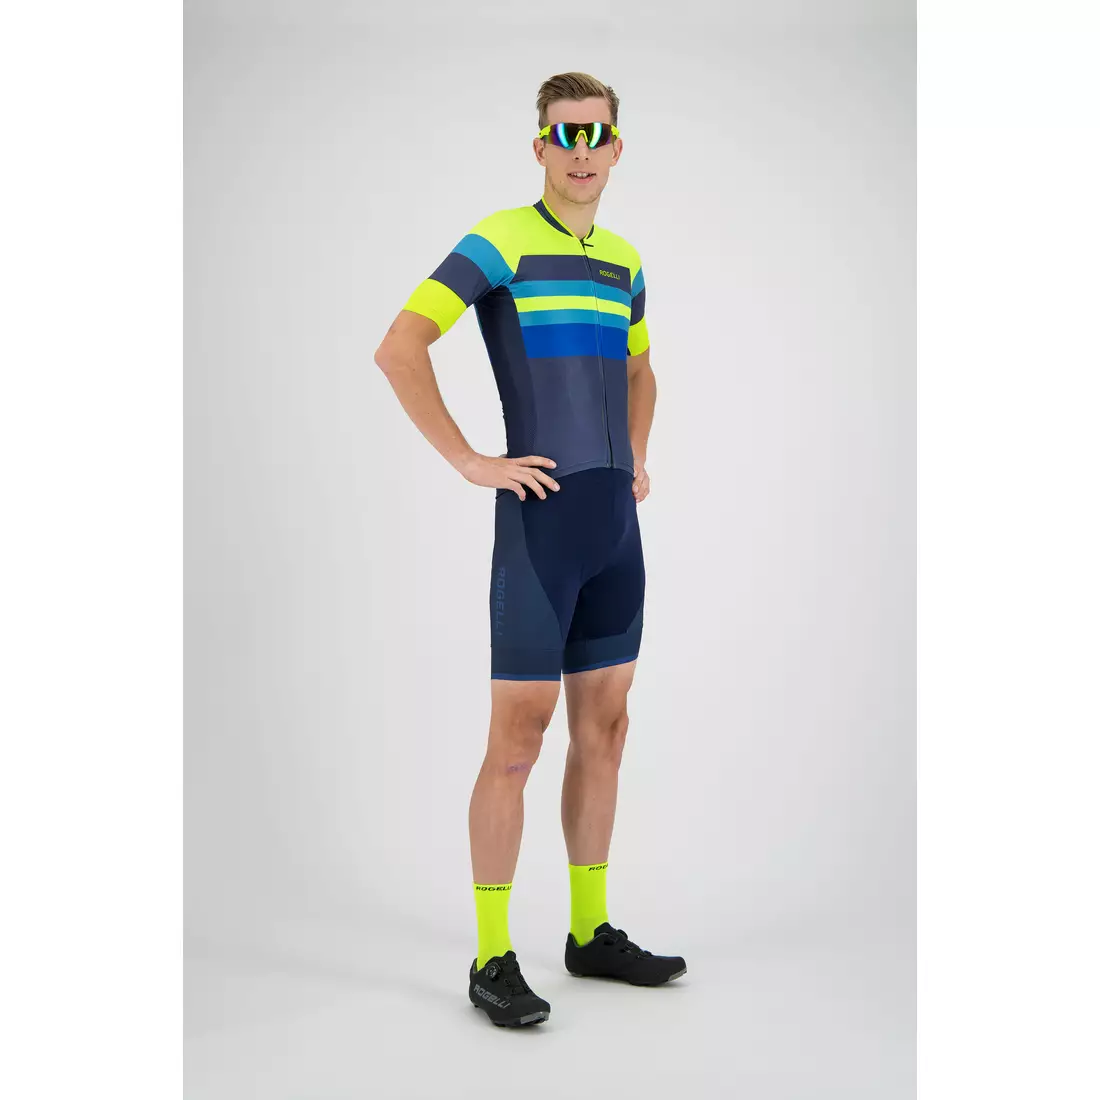 Rogelli PEAK 001.326 pánsky cyklistický dres modrý / fluór